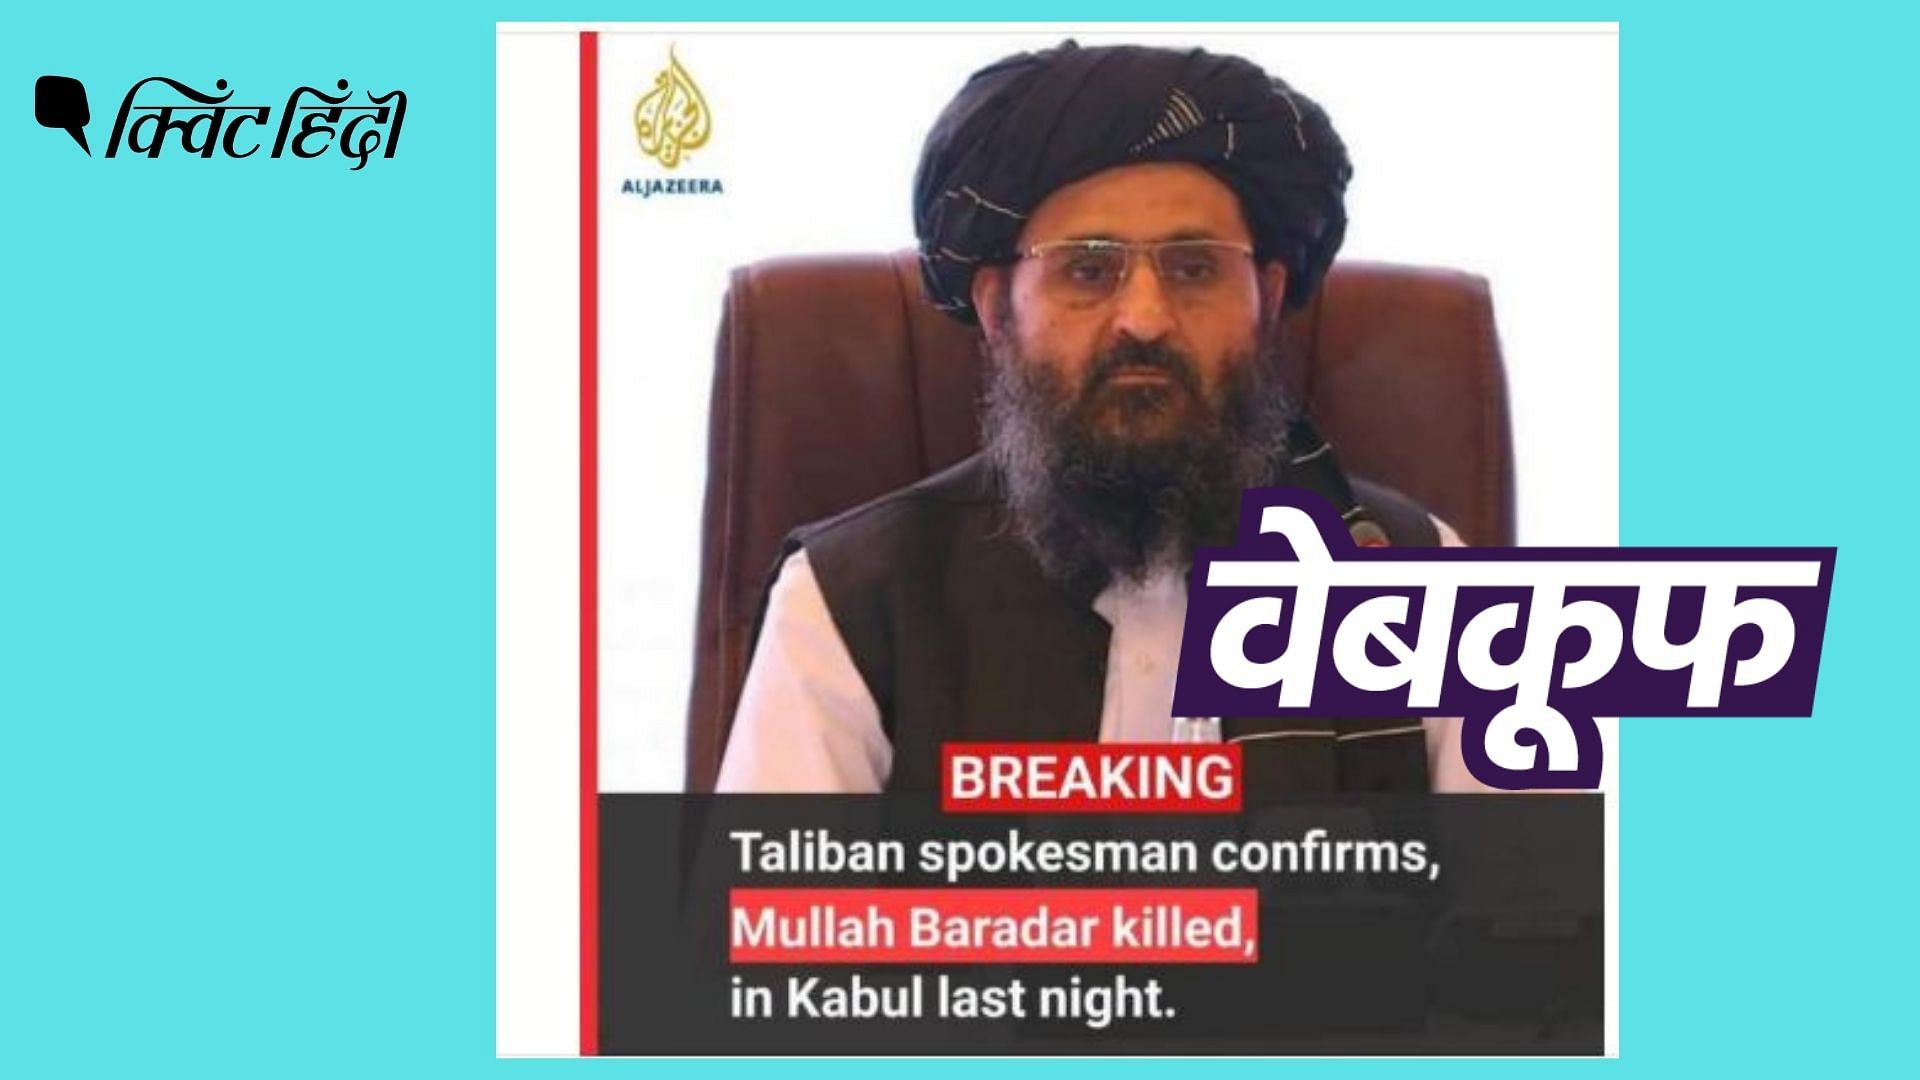 <div class="paragraphs"><p>तालिबान ने मुल्ला बरादर की मौत के दावे को झूठा बताया है कहा है कि वो जीवित और स्वस्थ है.</p></div>